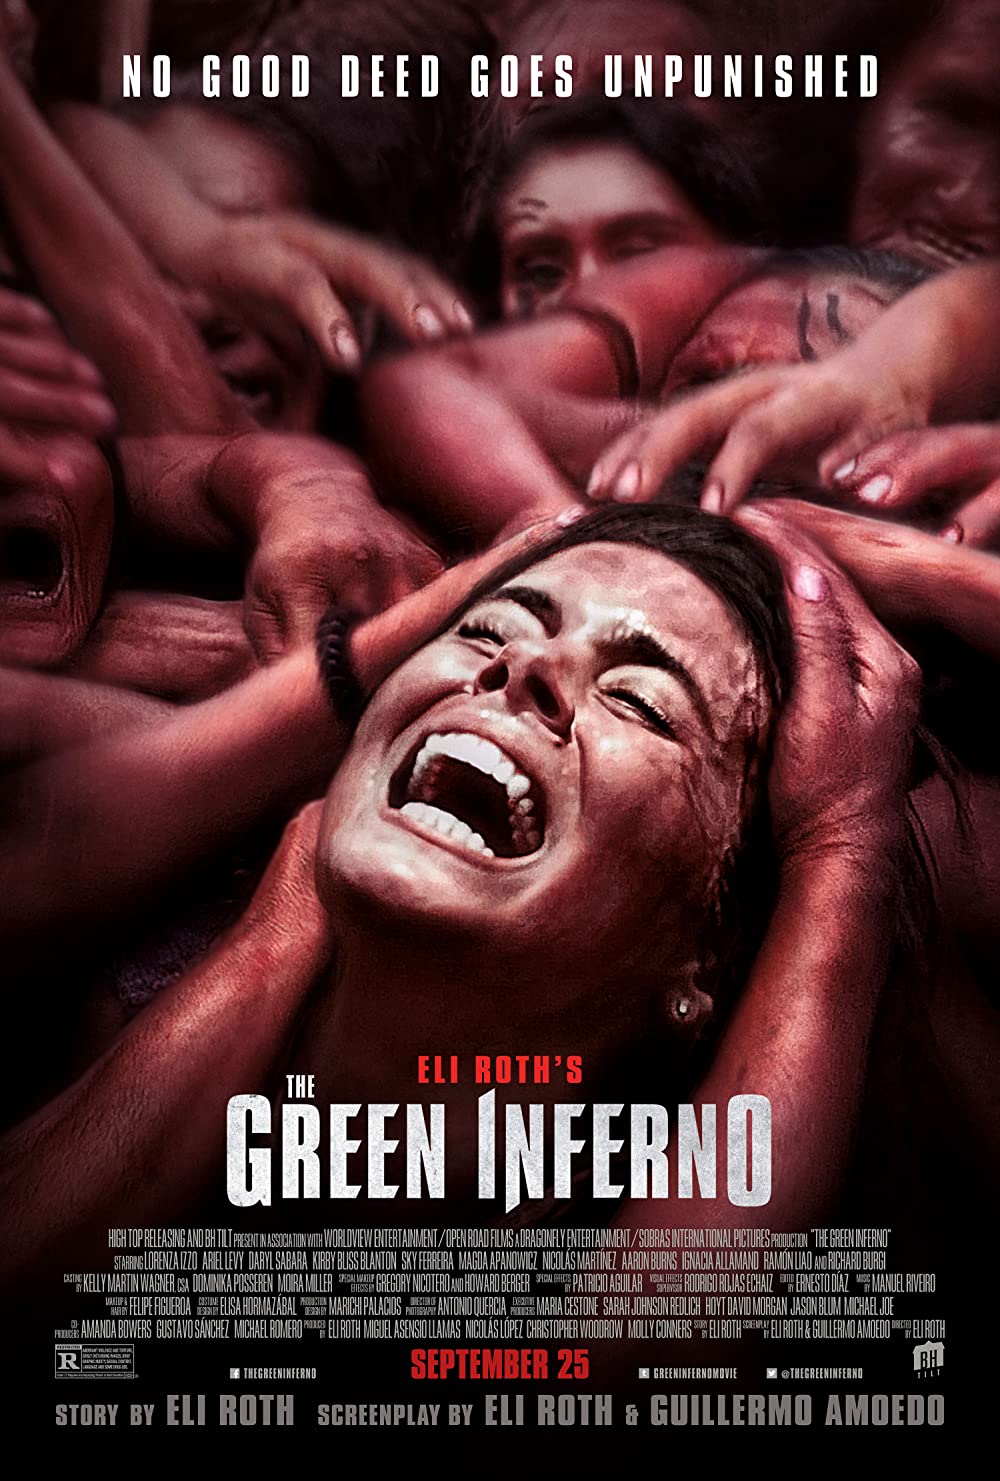 Filmbeschreibung zu The Green Inferno